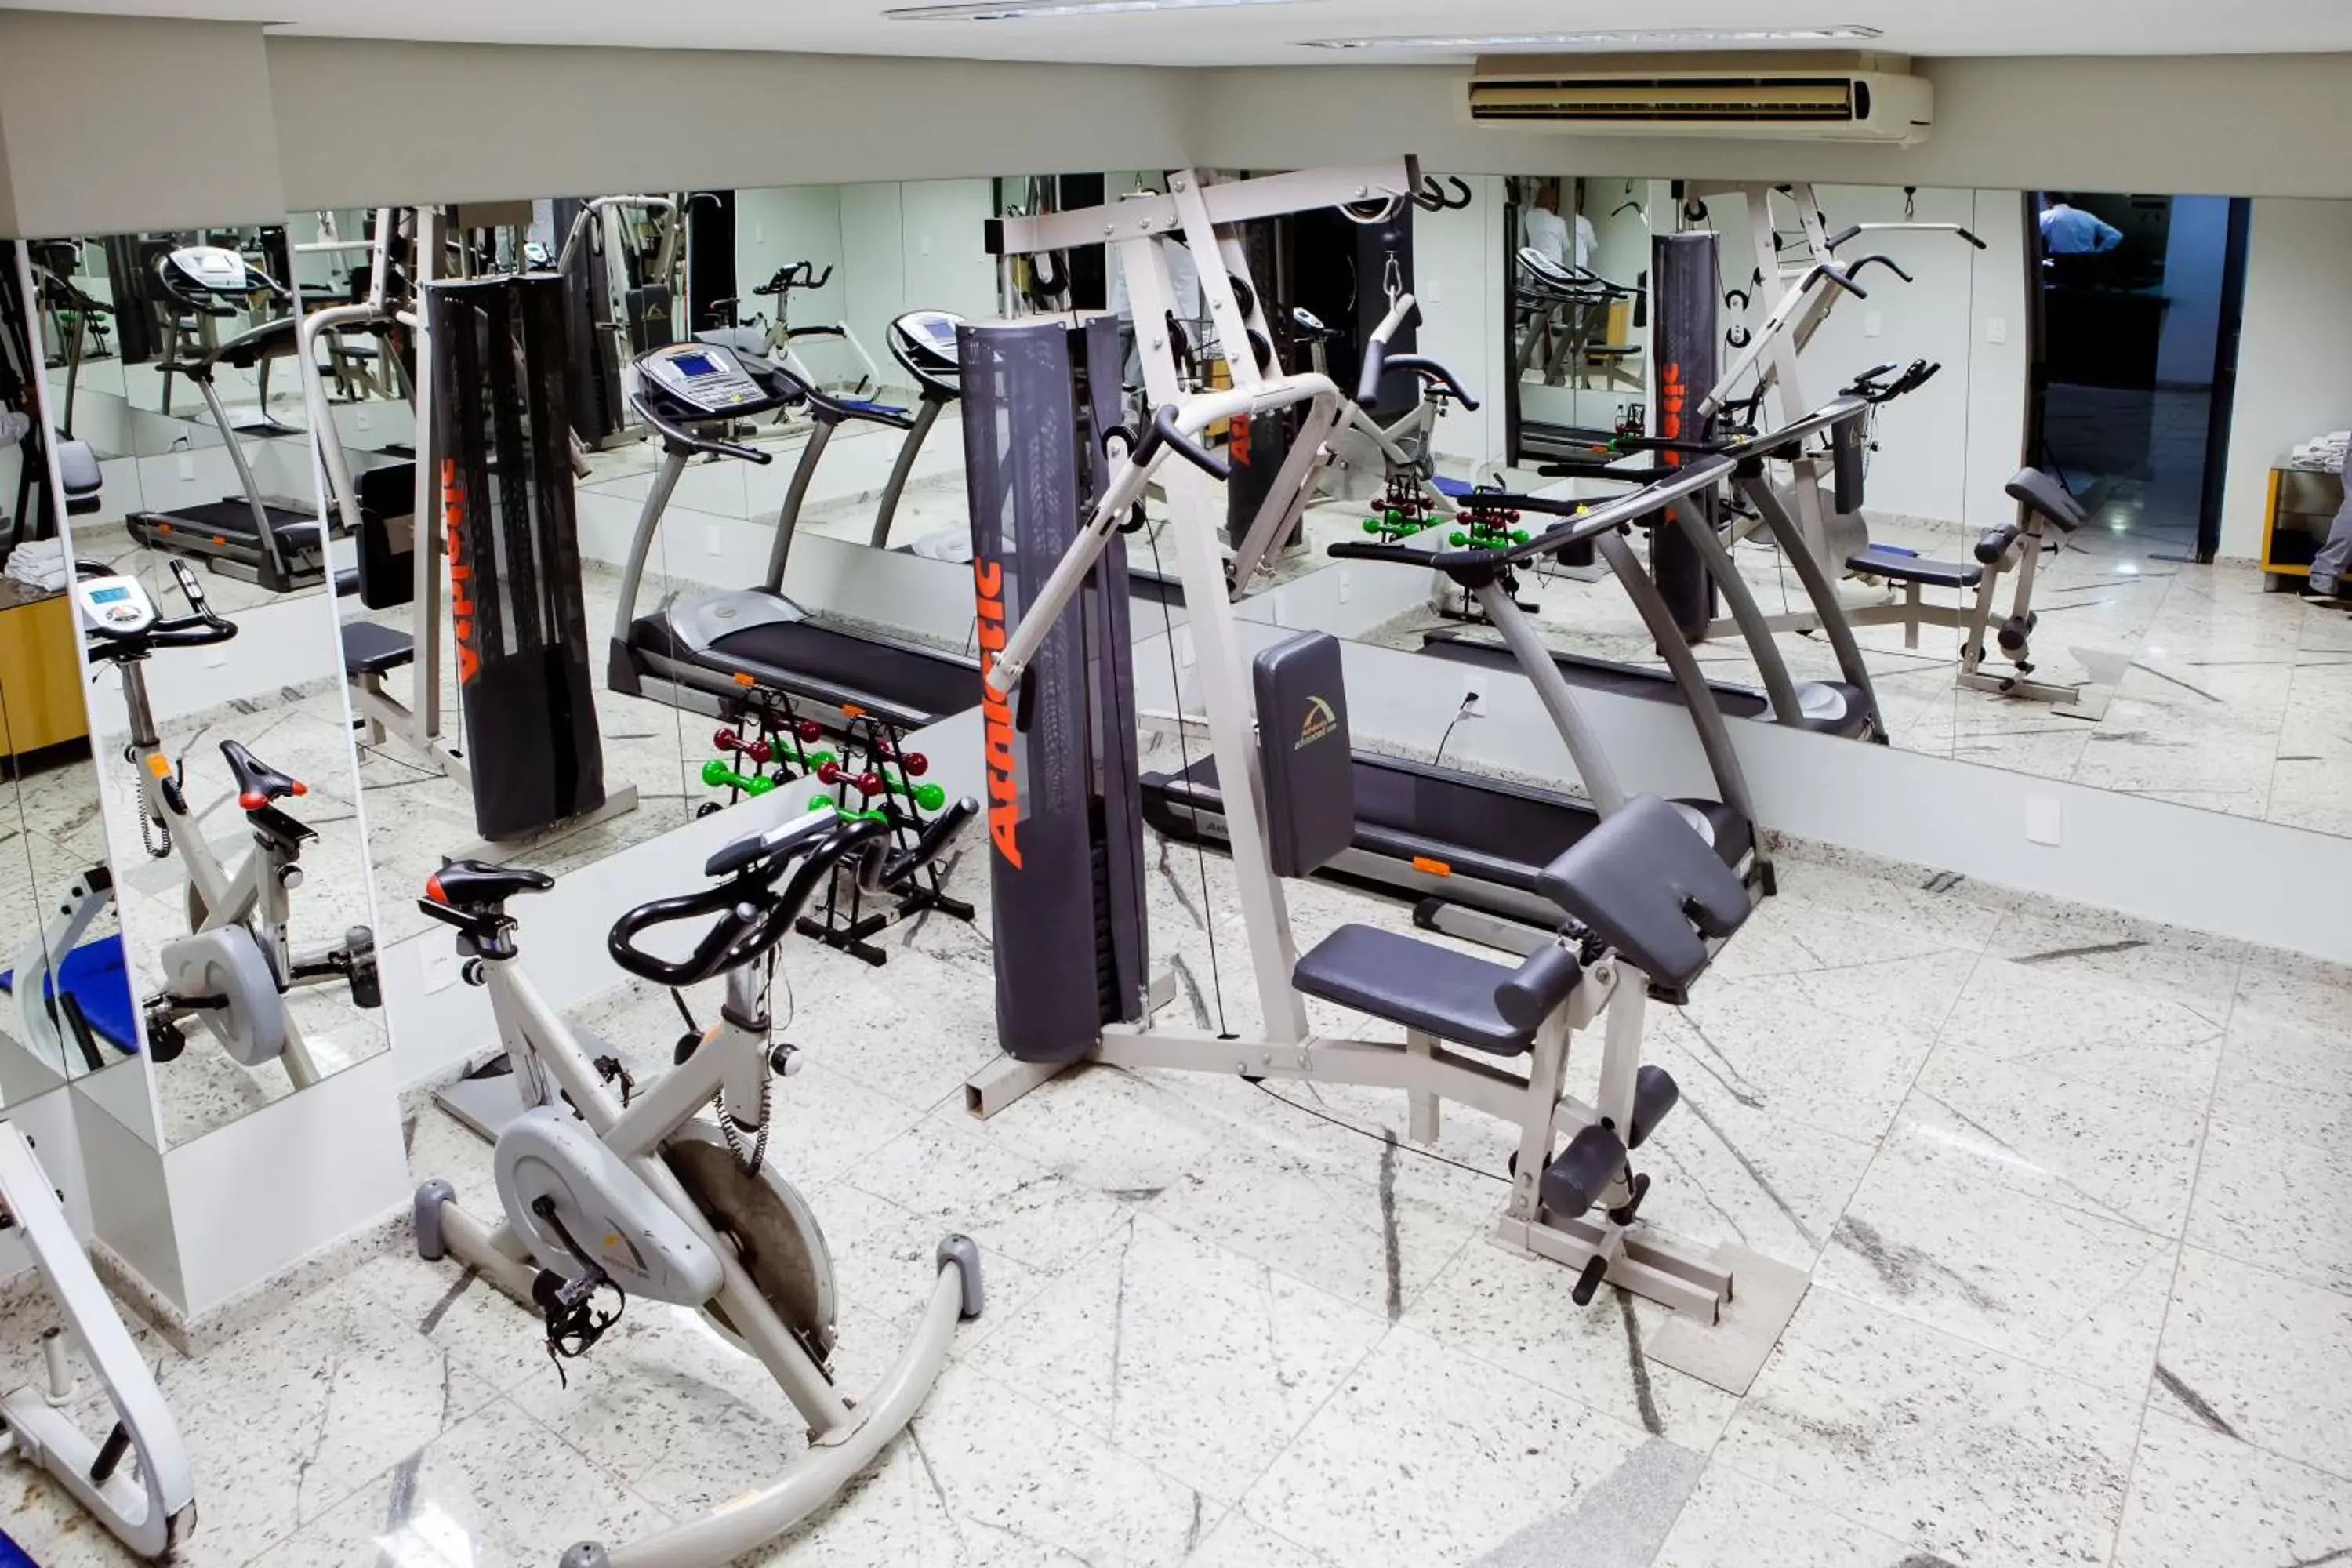 Fitness centre/facilities, Fitness Center/Facilities in JVA Fenix Hotel